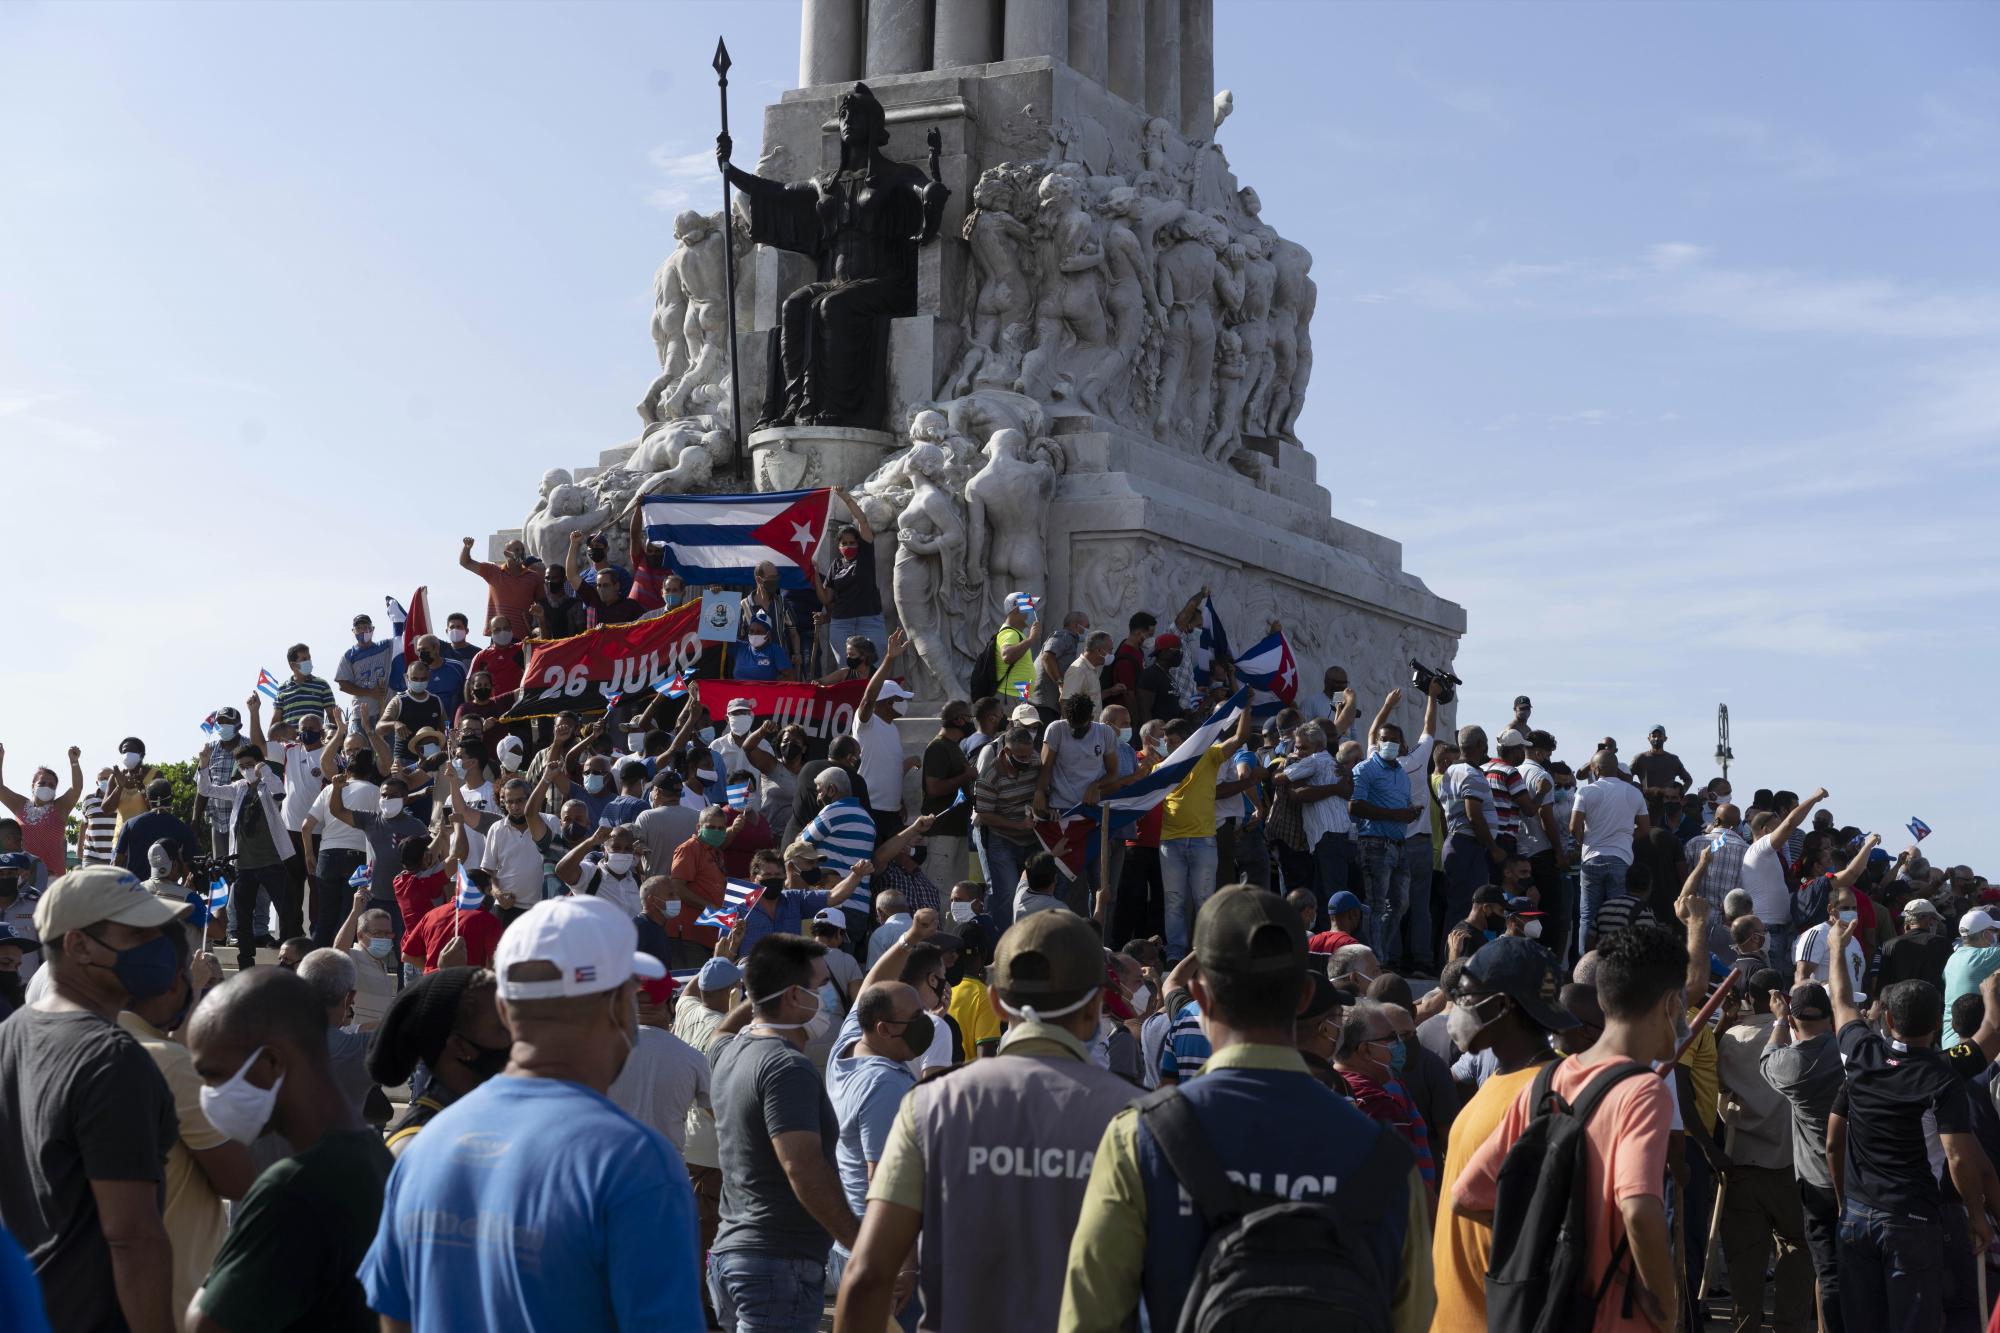 Simpatizantes del gobierno se reúnen en el monumento a Máximo Gómez en La Habana, Cuba, el domingo 11 de julio de 2021. Partidarios del gobierno salieron a las calles en el momento en que cientos más protestaron contra la escasez de alimentos y los altos precios de los alimentos. (AP Photo / Eliana Aponte)